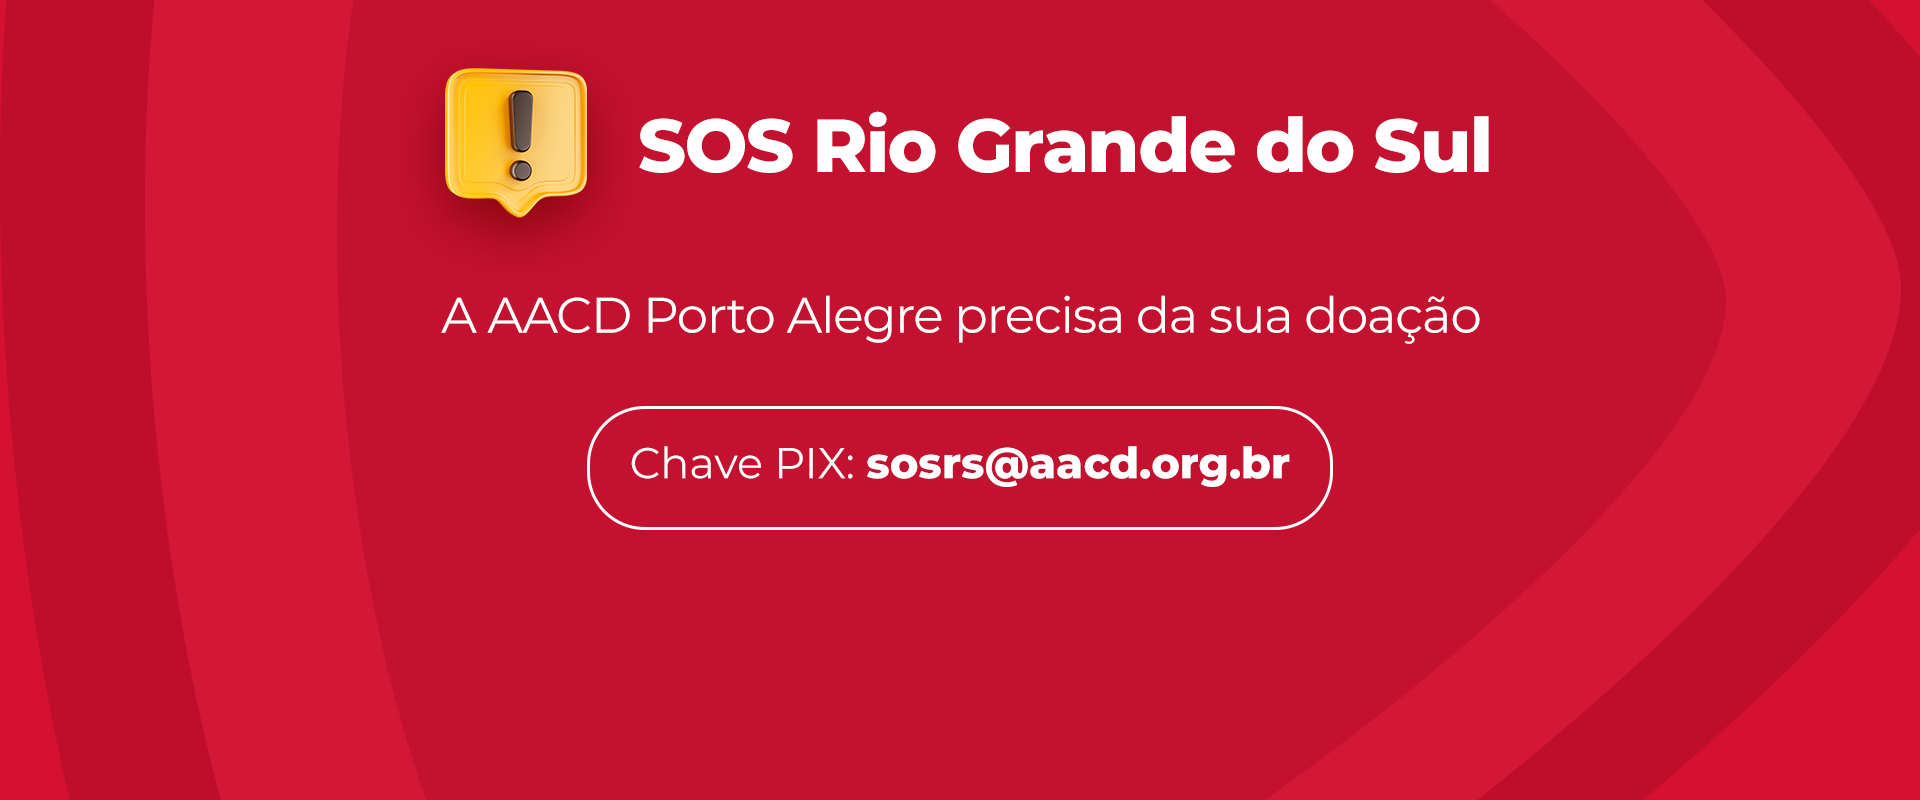 A AACD está se mobilizando para auxiliar a comunidade do estado do Rio Grande do Sul atingida pelas enchentes, incluindo os pacientes e colaboradores da unidade da AACD de Porto Alegre